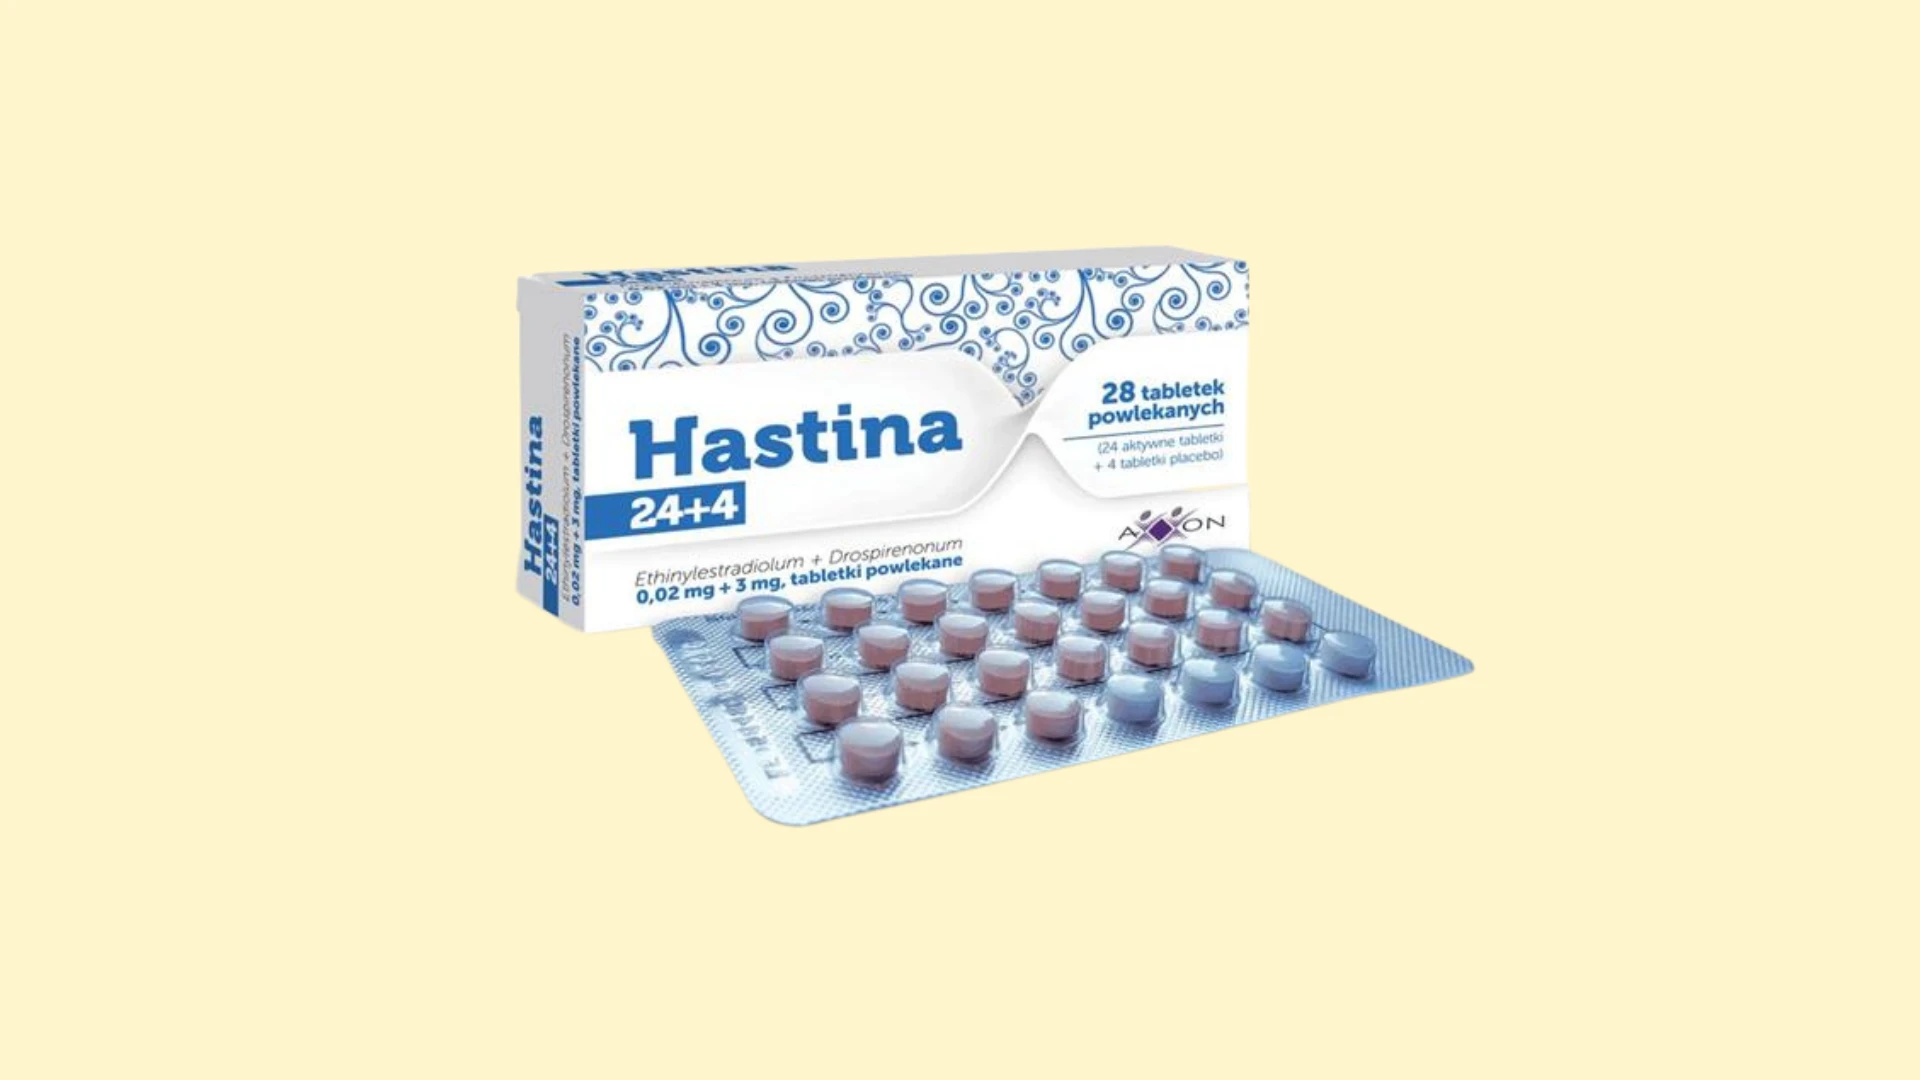 Hastina 24+4 - Recepta online - e-Recepta z konsultacją | cena, dawkowanie, przeciwwskazania